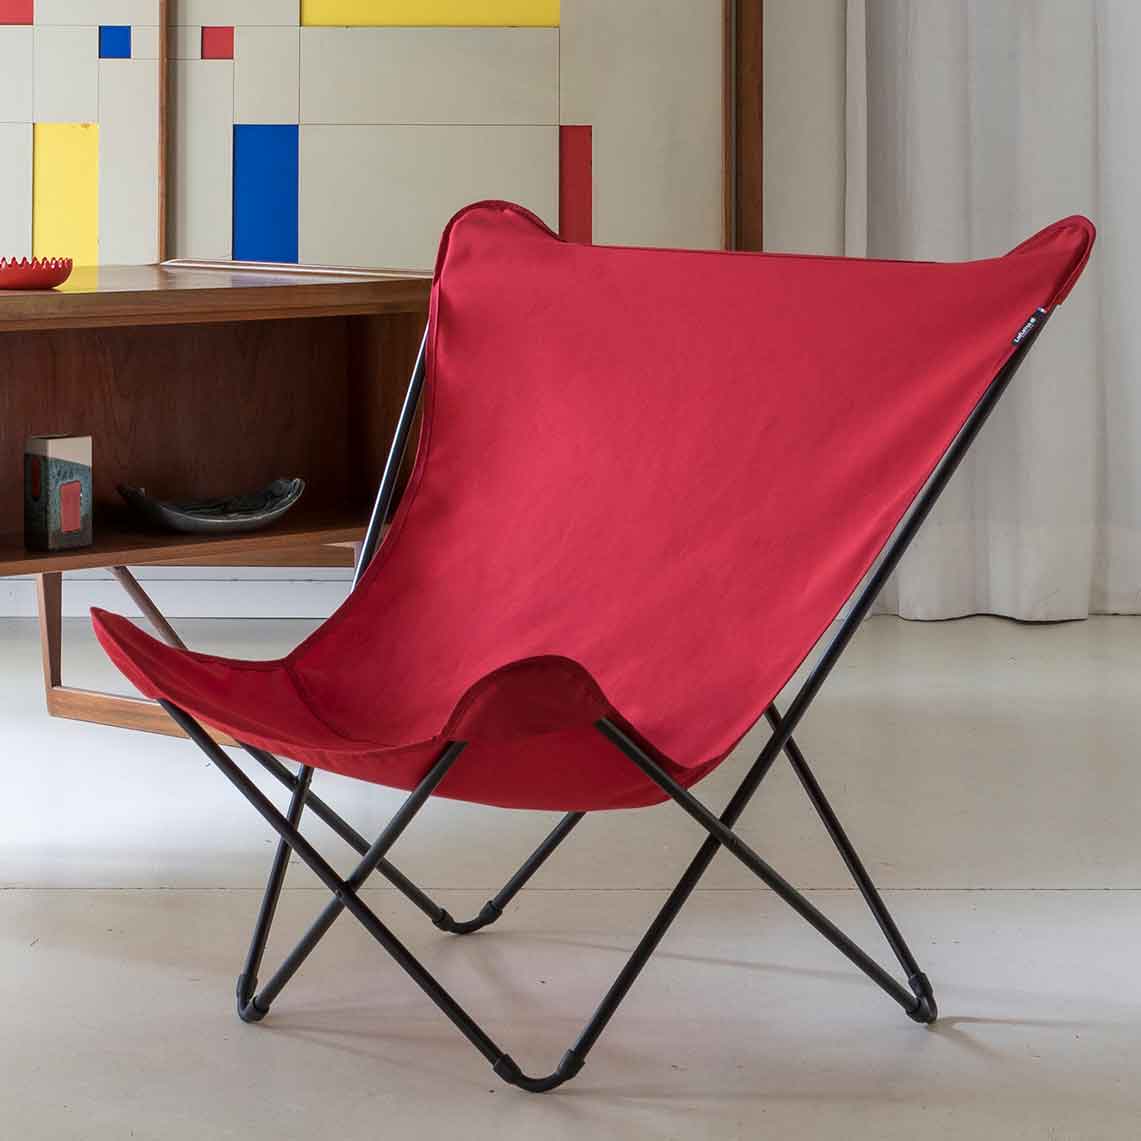 Folding design chair Pop-Up xl airlon garance